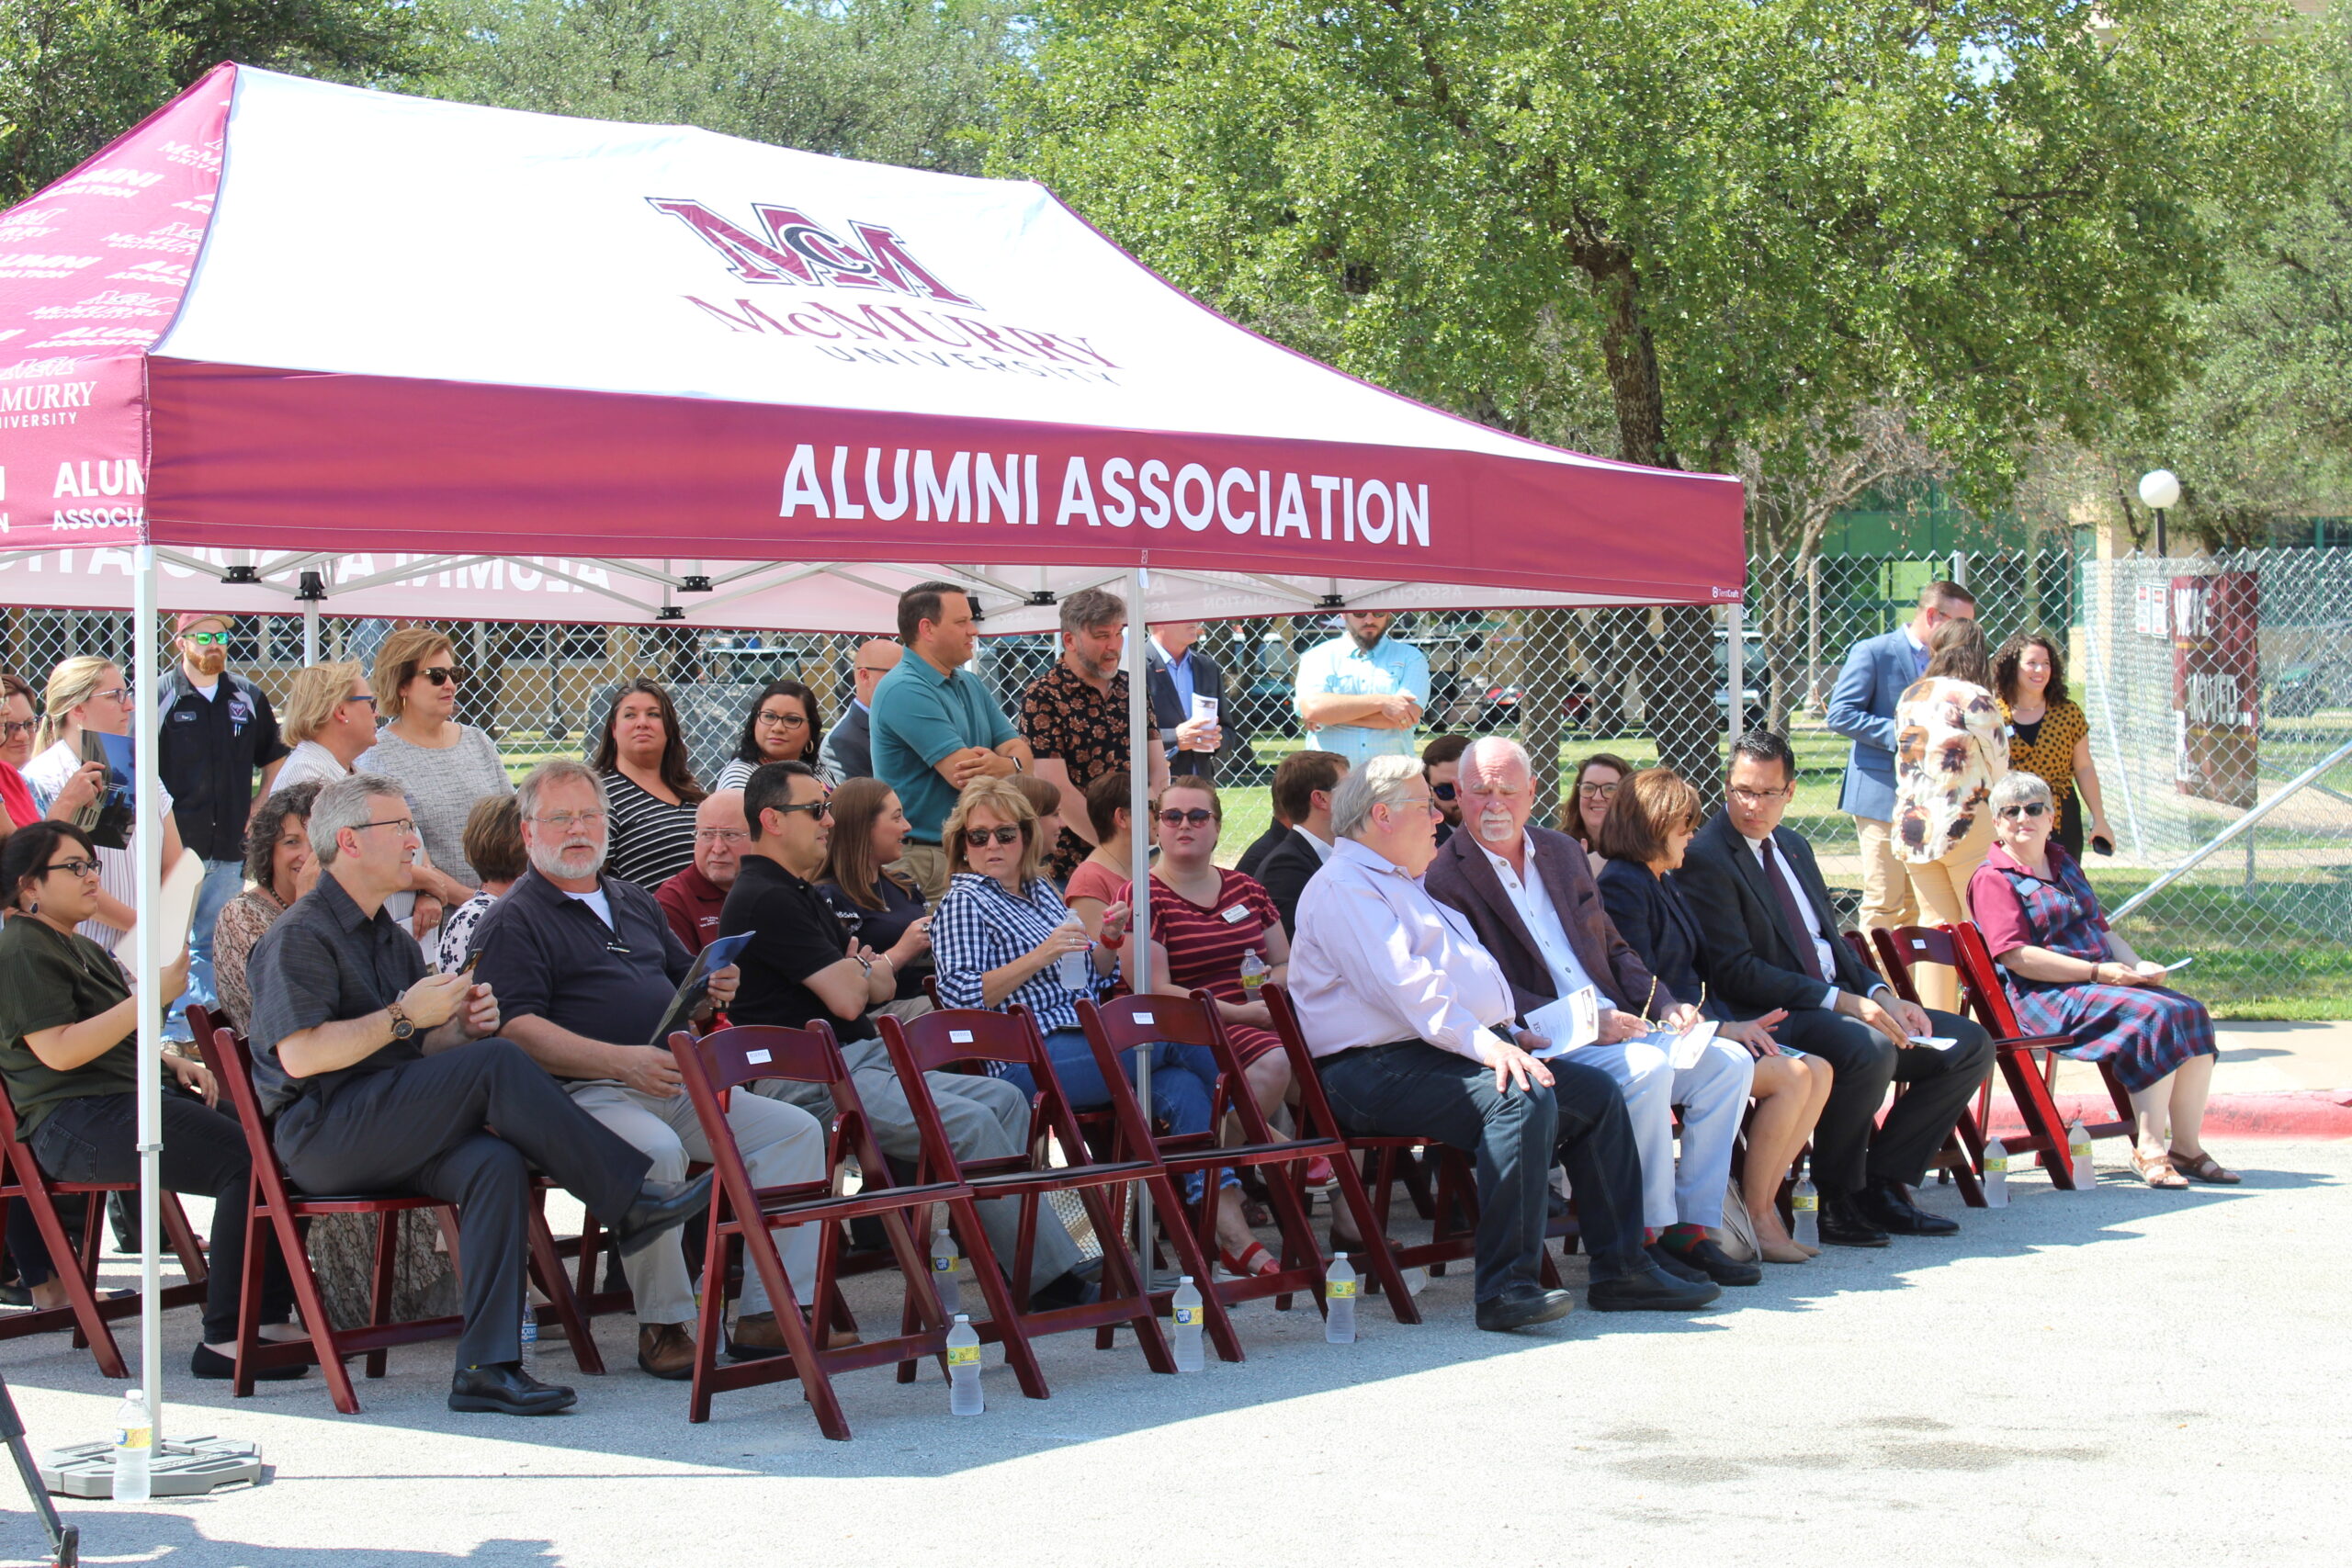 Alumni Association tent